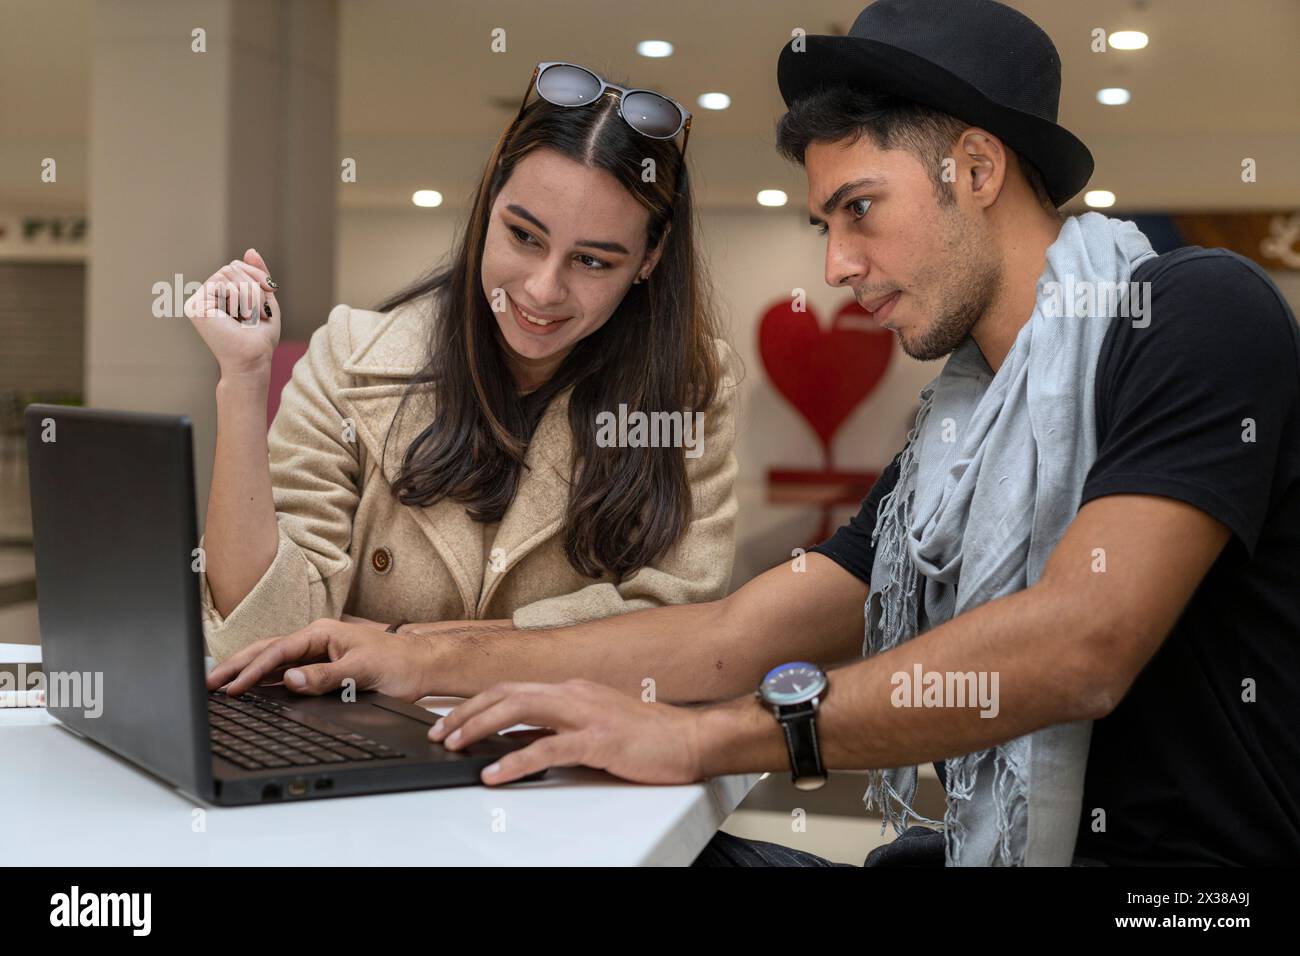 Das junge lateinamerikanische Touristenpaar, das online einkaufen will. Konzept für Online-Shopping, Tourismus Stockfoto